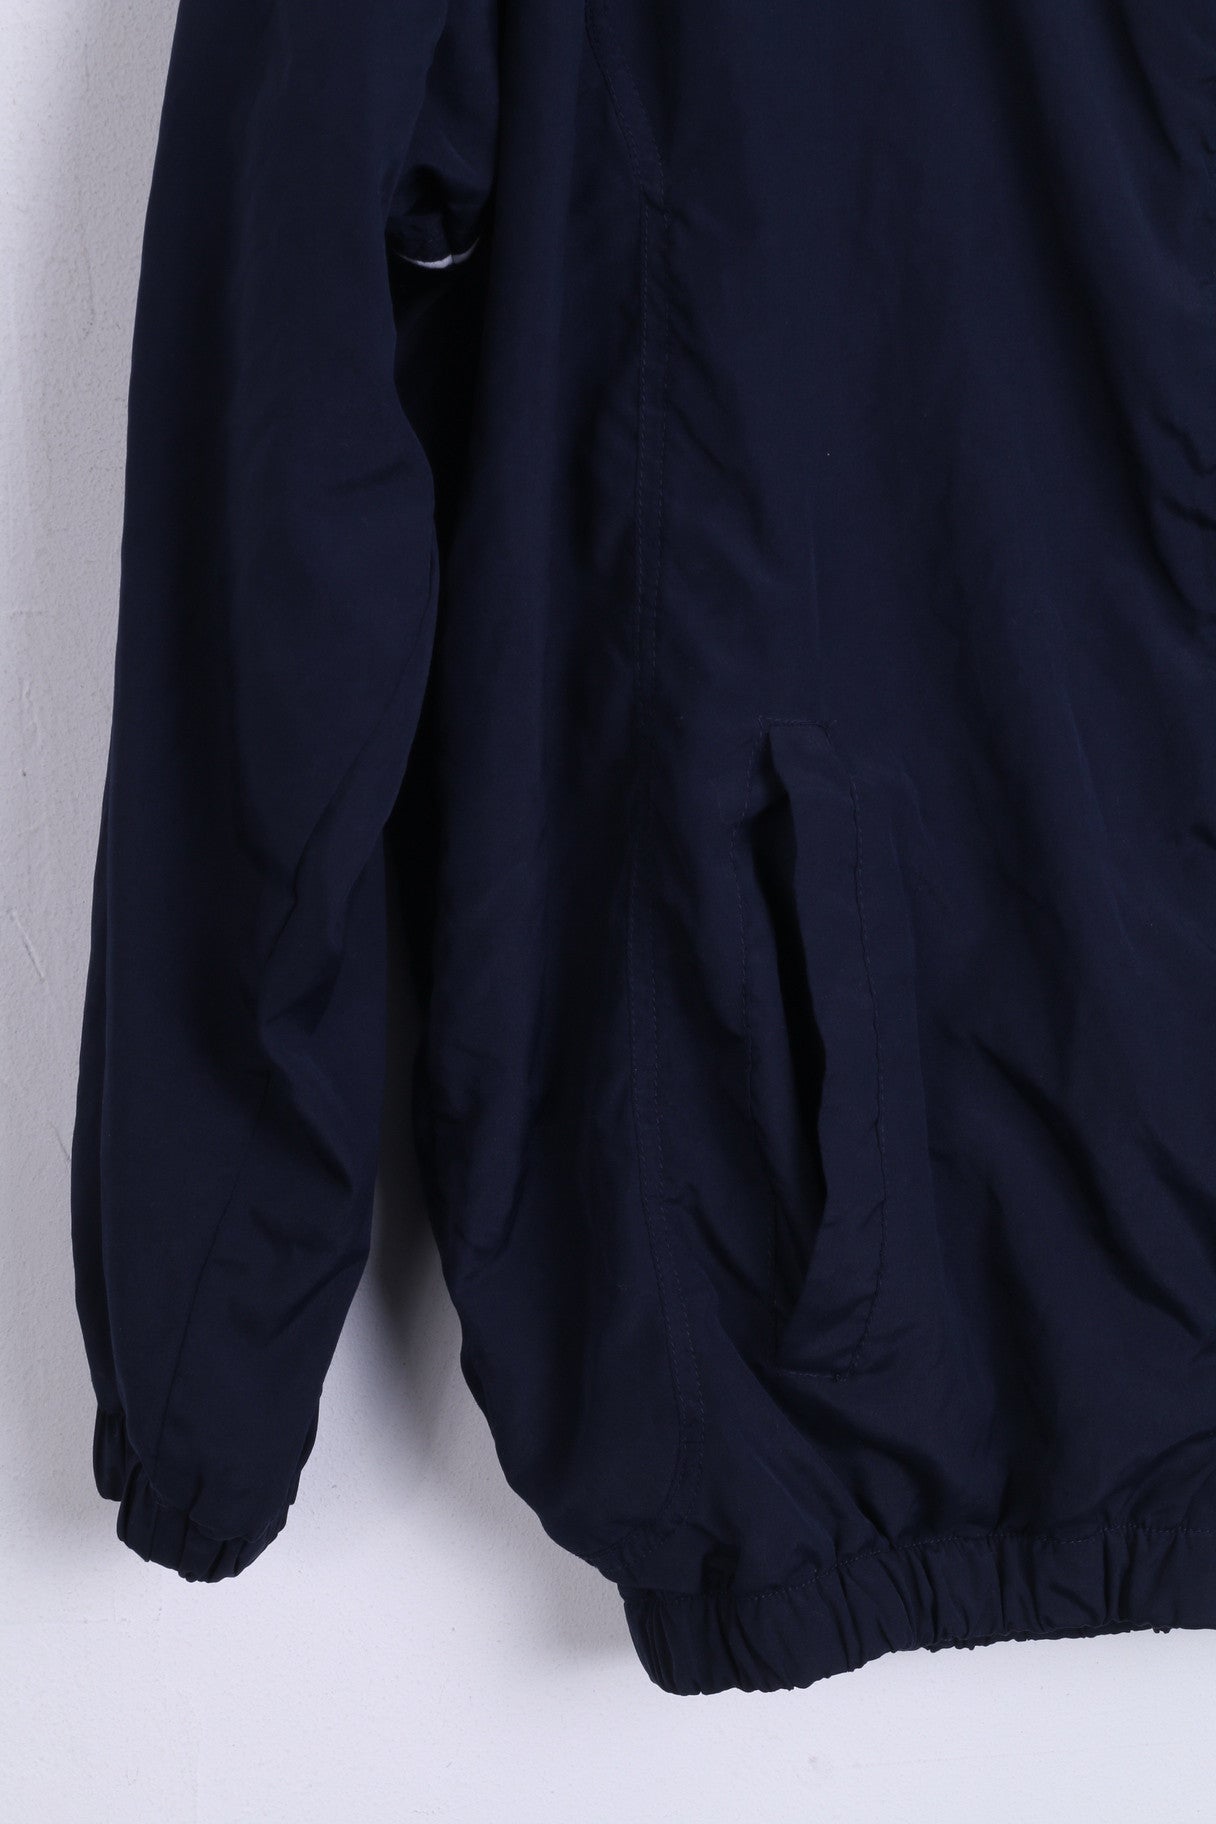 Giacca da tuta UMBRO da ragazzo XS XLB Maglietta da calcio leggera con zip blu scuro